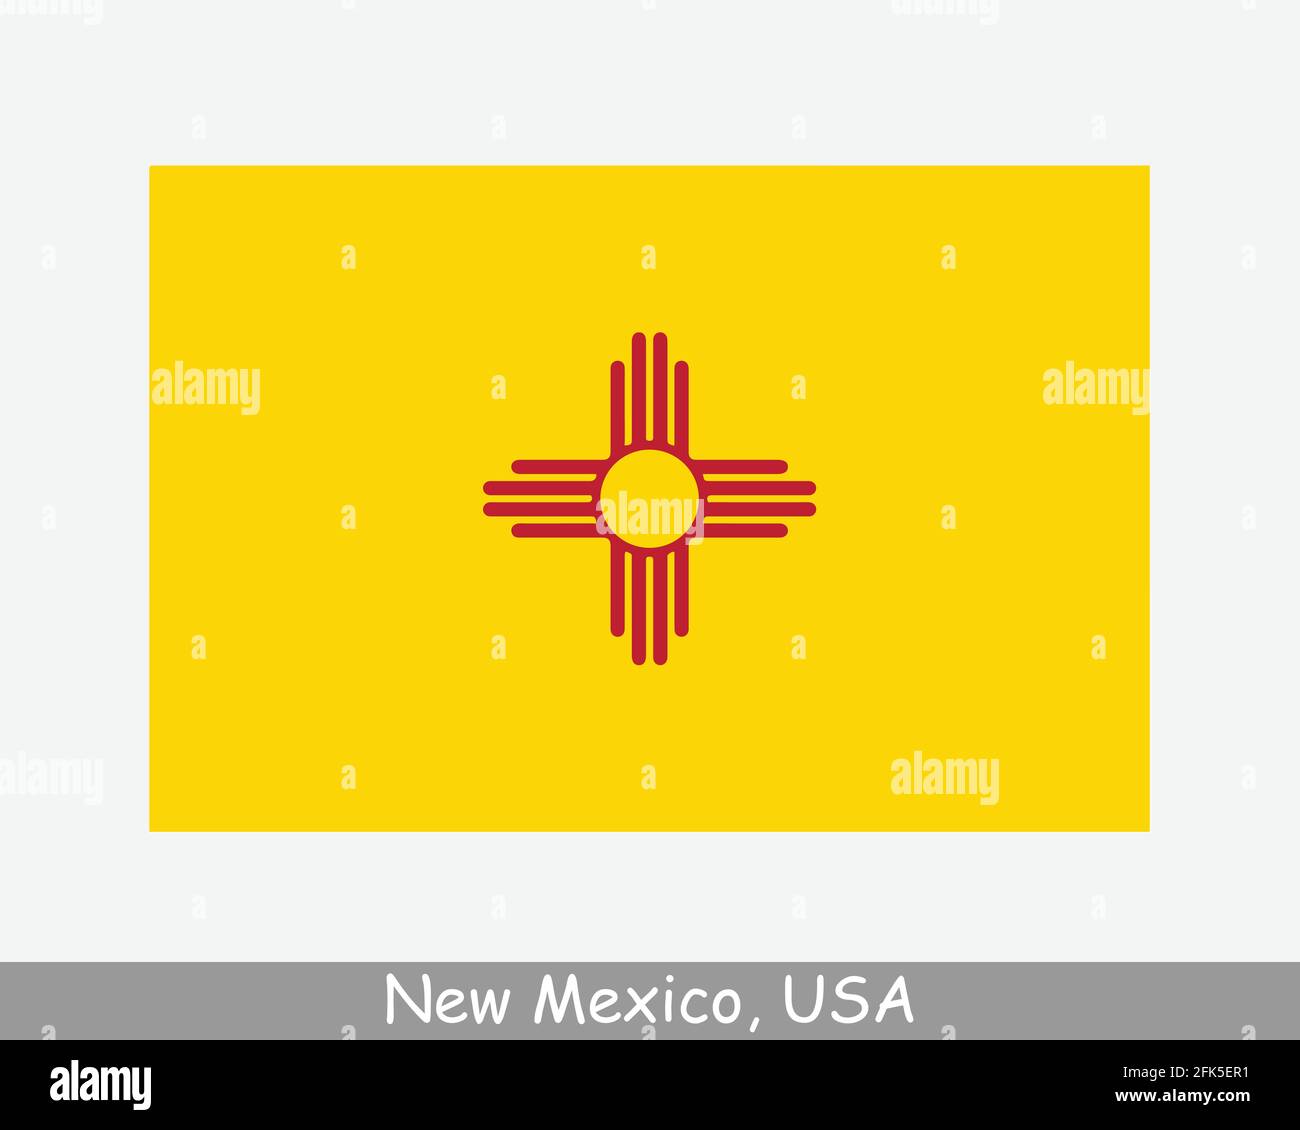 New Mexico USA Staatsflagge. Flagge von NM, USA isoliert auf weißem Hintergrund. Vereinigte Staaten, Amerika, American, Vereinigte Staaten von Amerika, US-Bundesstaat. Vektor Stock Vektor